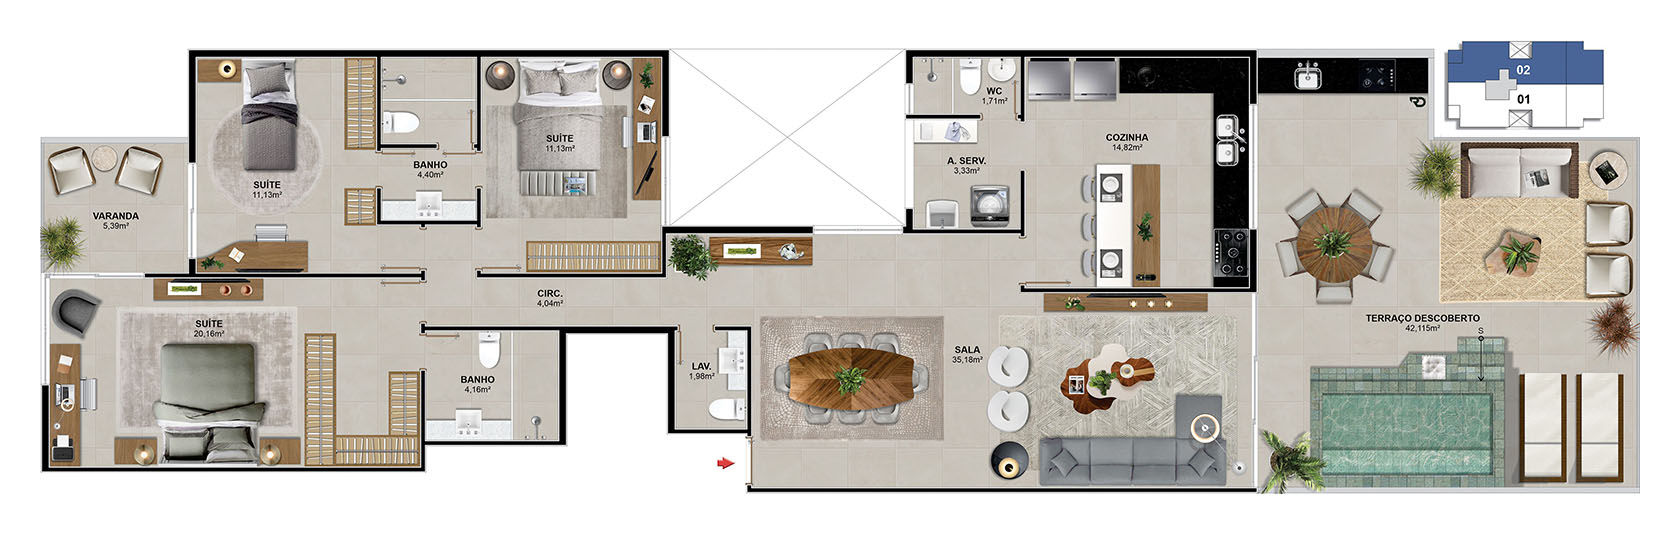 Cobertura 302 - 173,12 m²